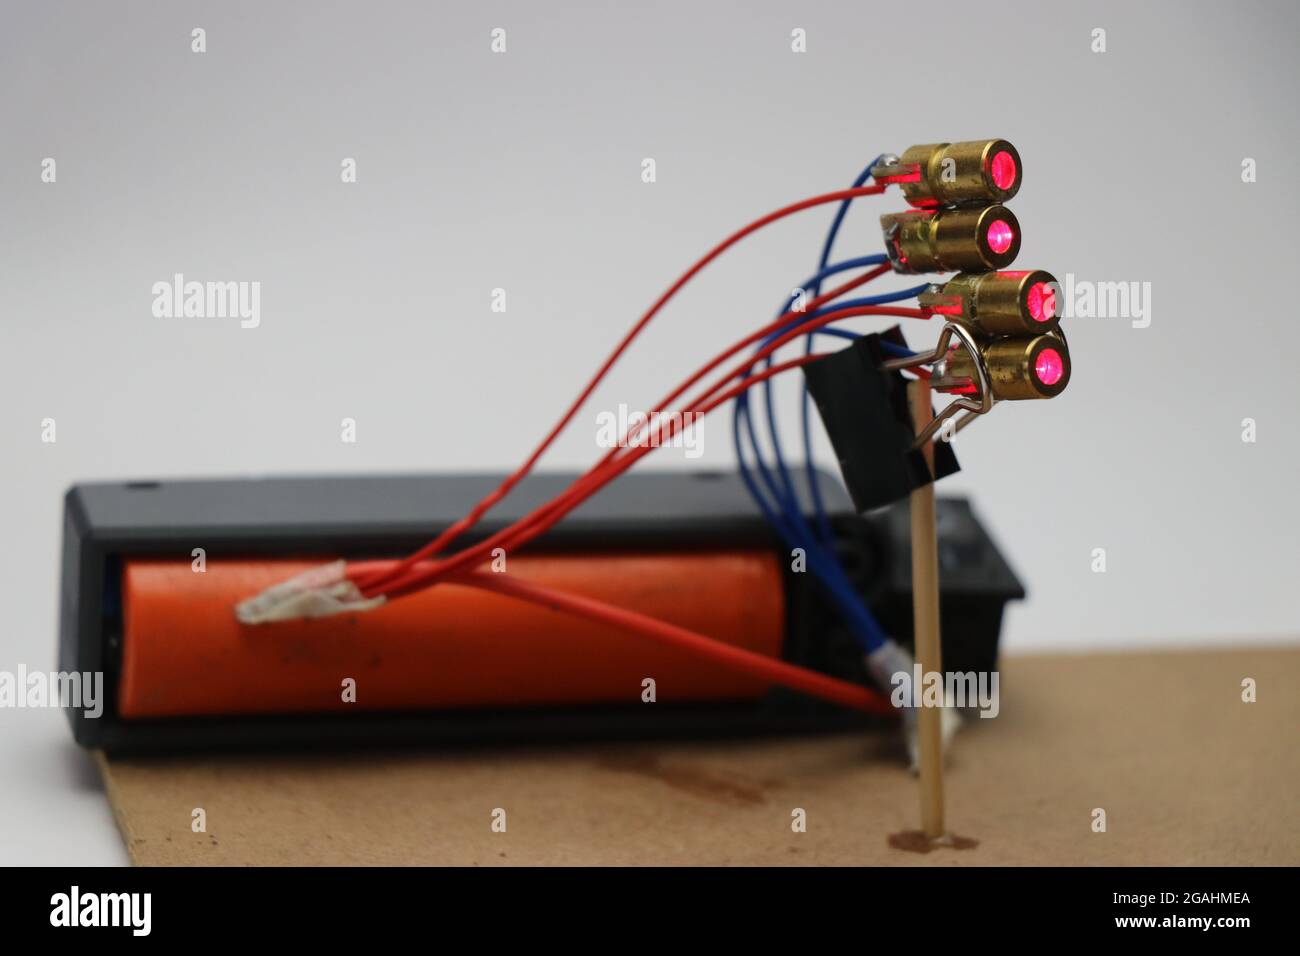 Elektronisches Hobby-Projekt mit Batterie und Rotpunkt-Lasermodul. Wissenschaftliche Experimente Stockfoto